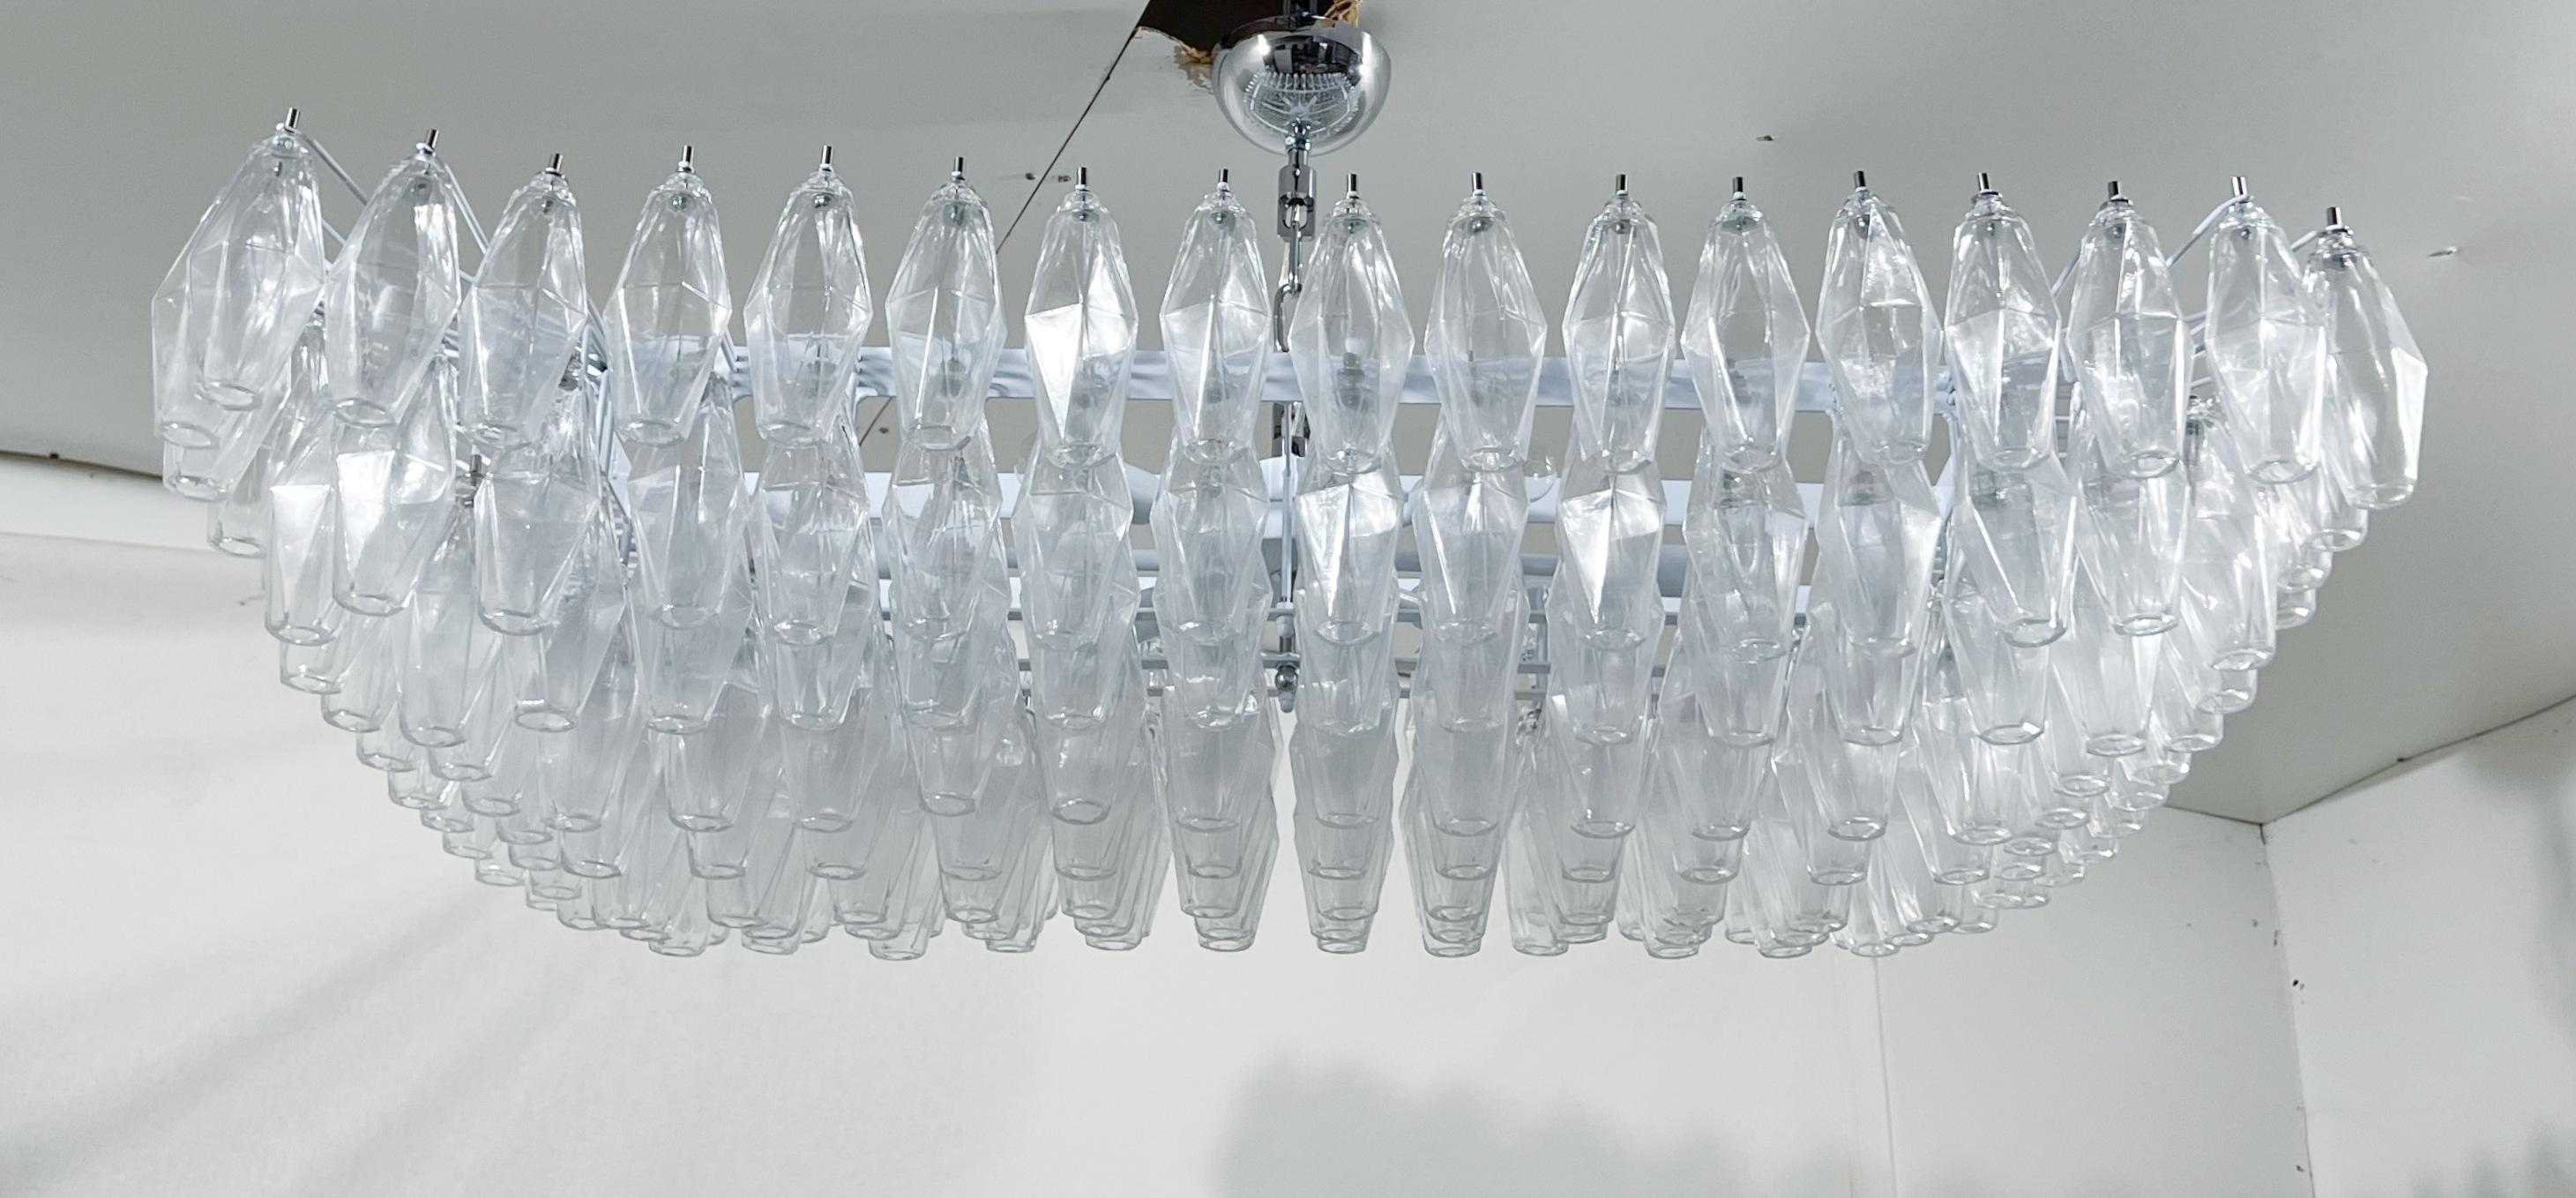 Lustre italien de forme rectangulaire avec des verres de Murano transparents en forme de polyèdres / polyédriques montés sur une structure en métal blanc avec des ferrures chromées / Fabriqué en Italie.
Mesures : Longueur : 44 pouces, largeur 26